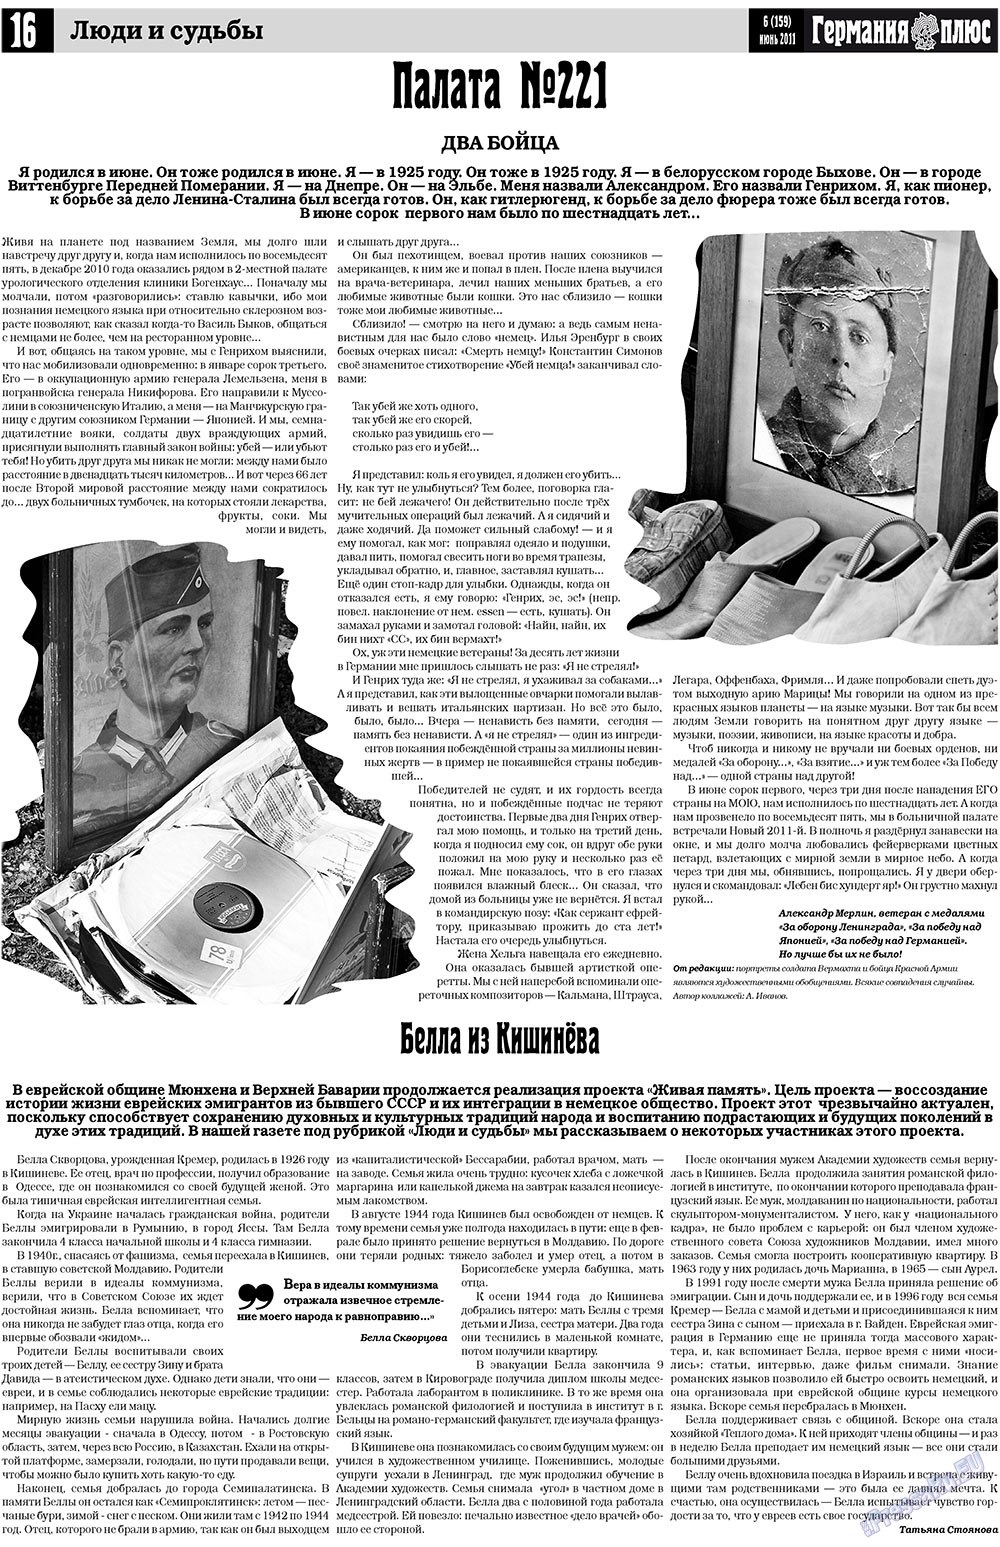 Германия плюс, газета. 2011 №6 стр.16